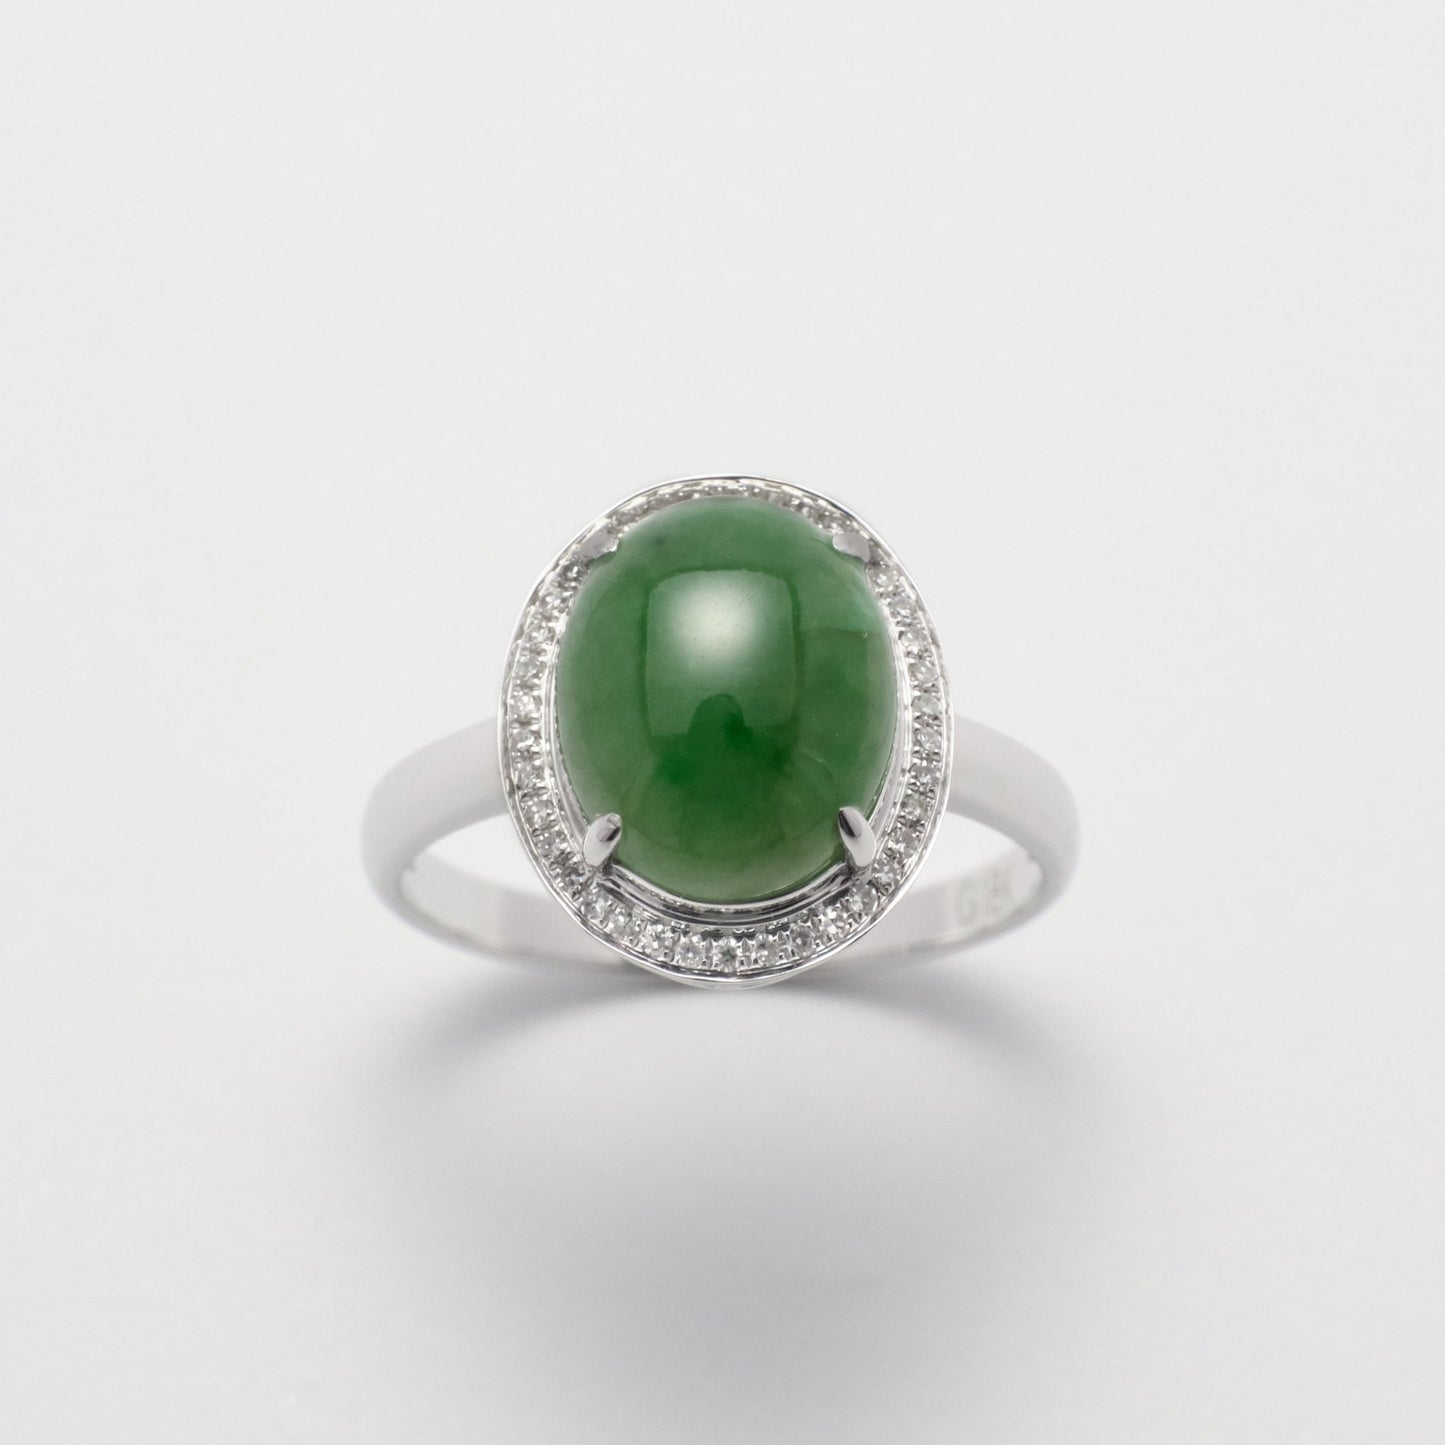 Ring - 18K白金緬甸老坑花青鵝蛋形天然翡翠配鑽石戒指 - 雅玉珠寶